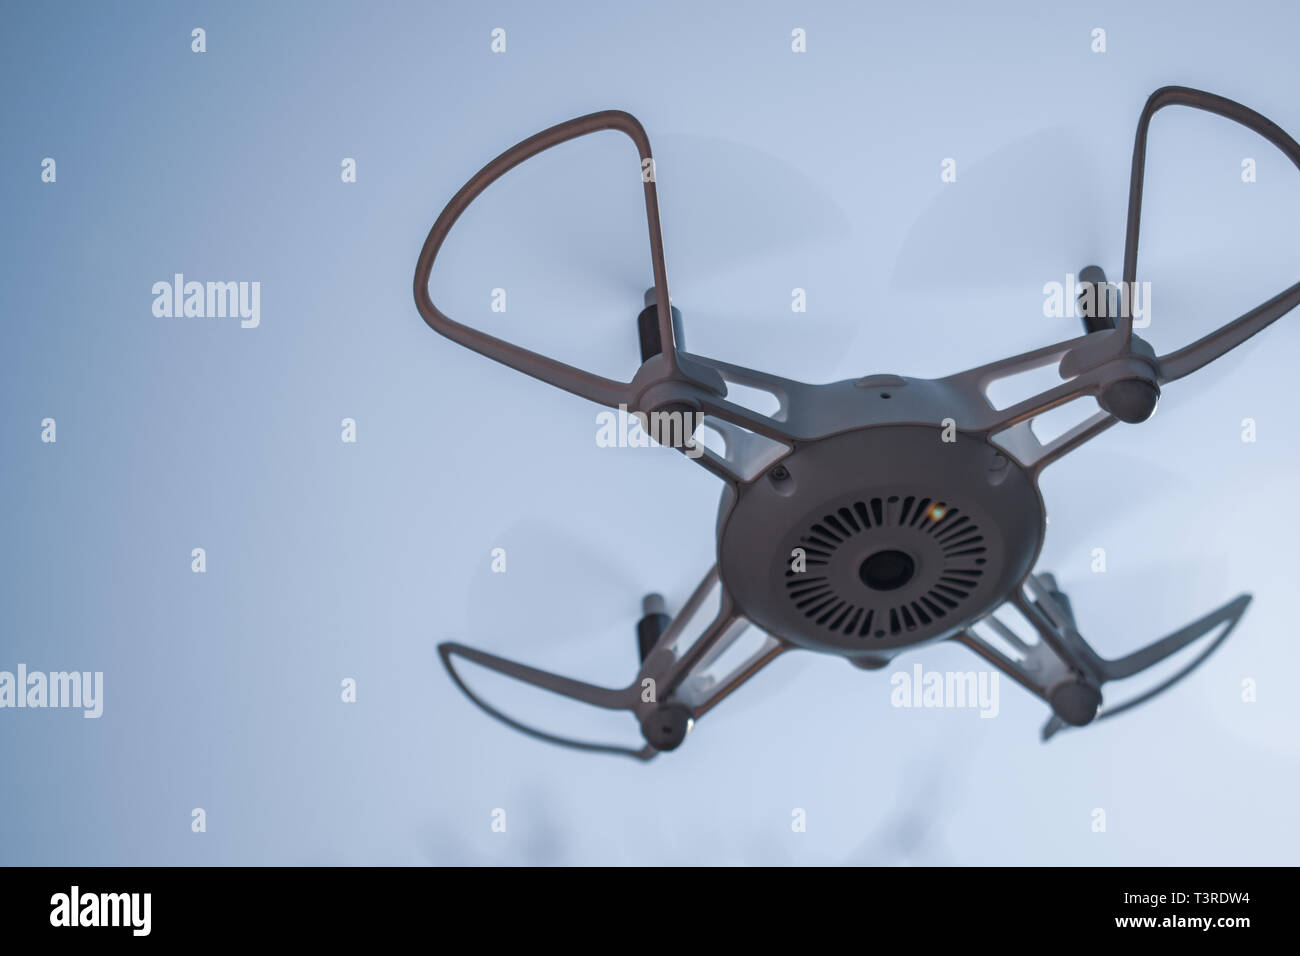 Drone Quadcopter flotando en un cielo azul Foto de stock